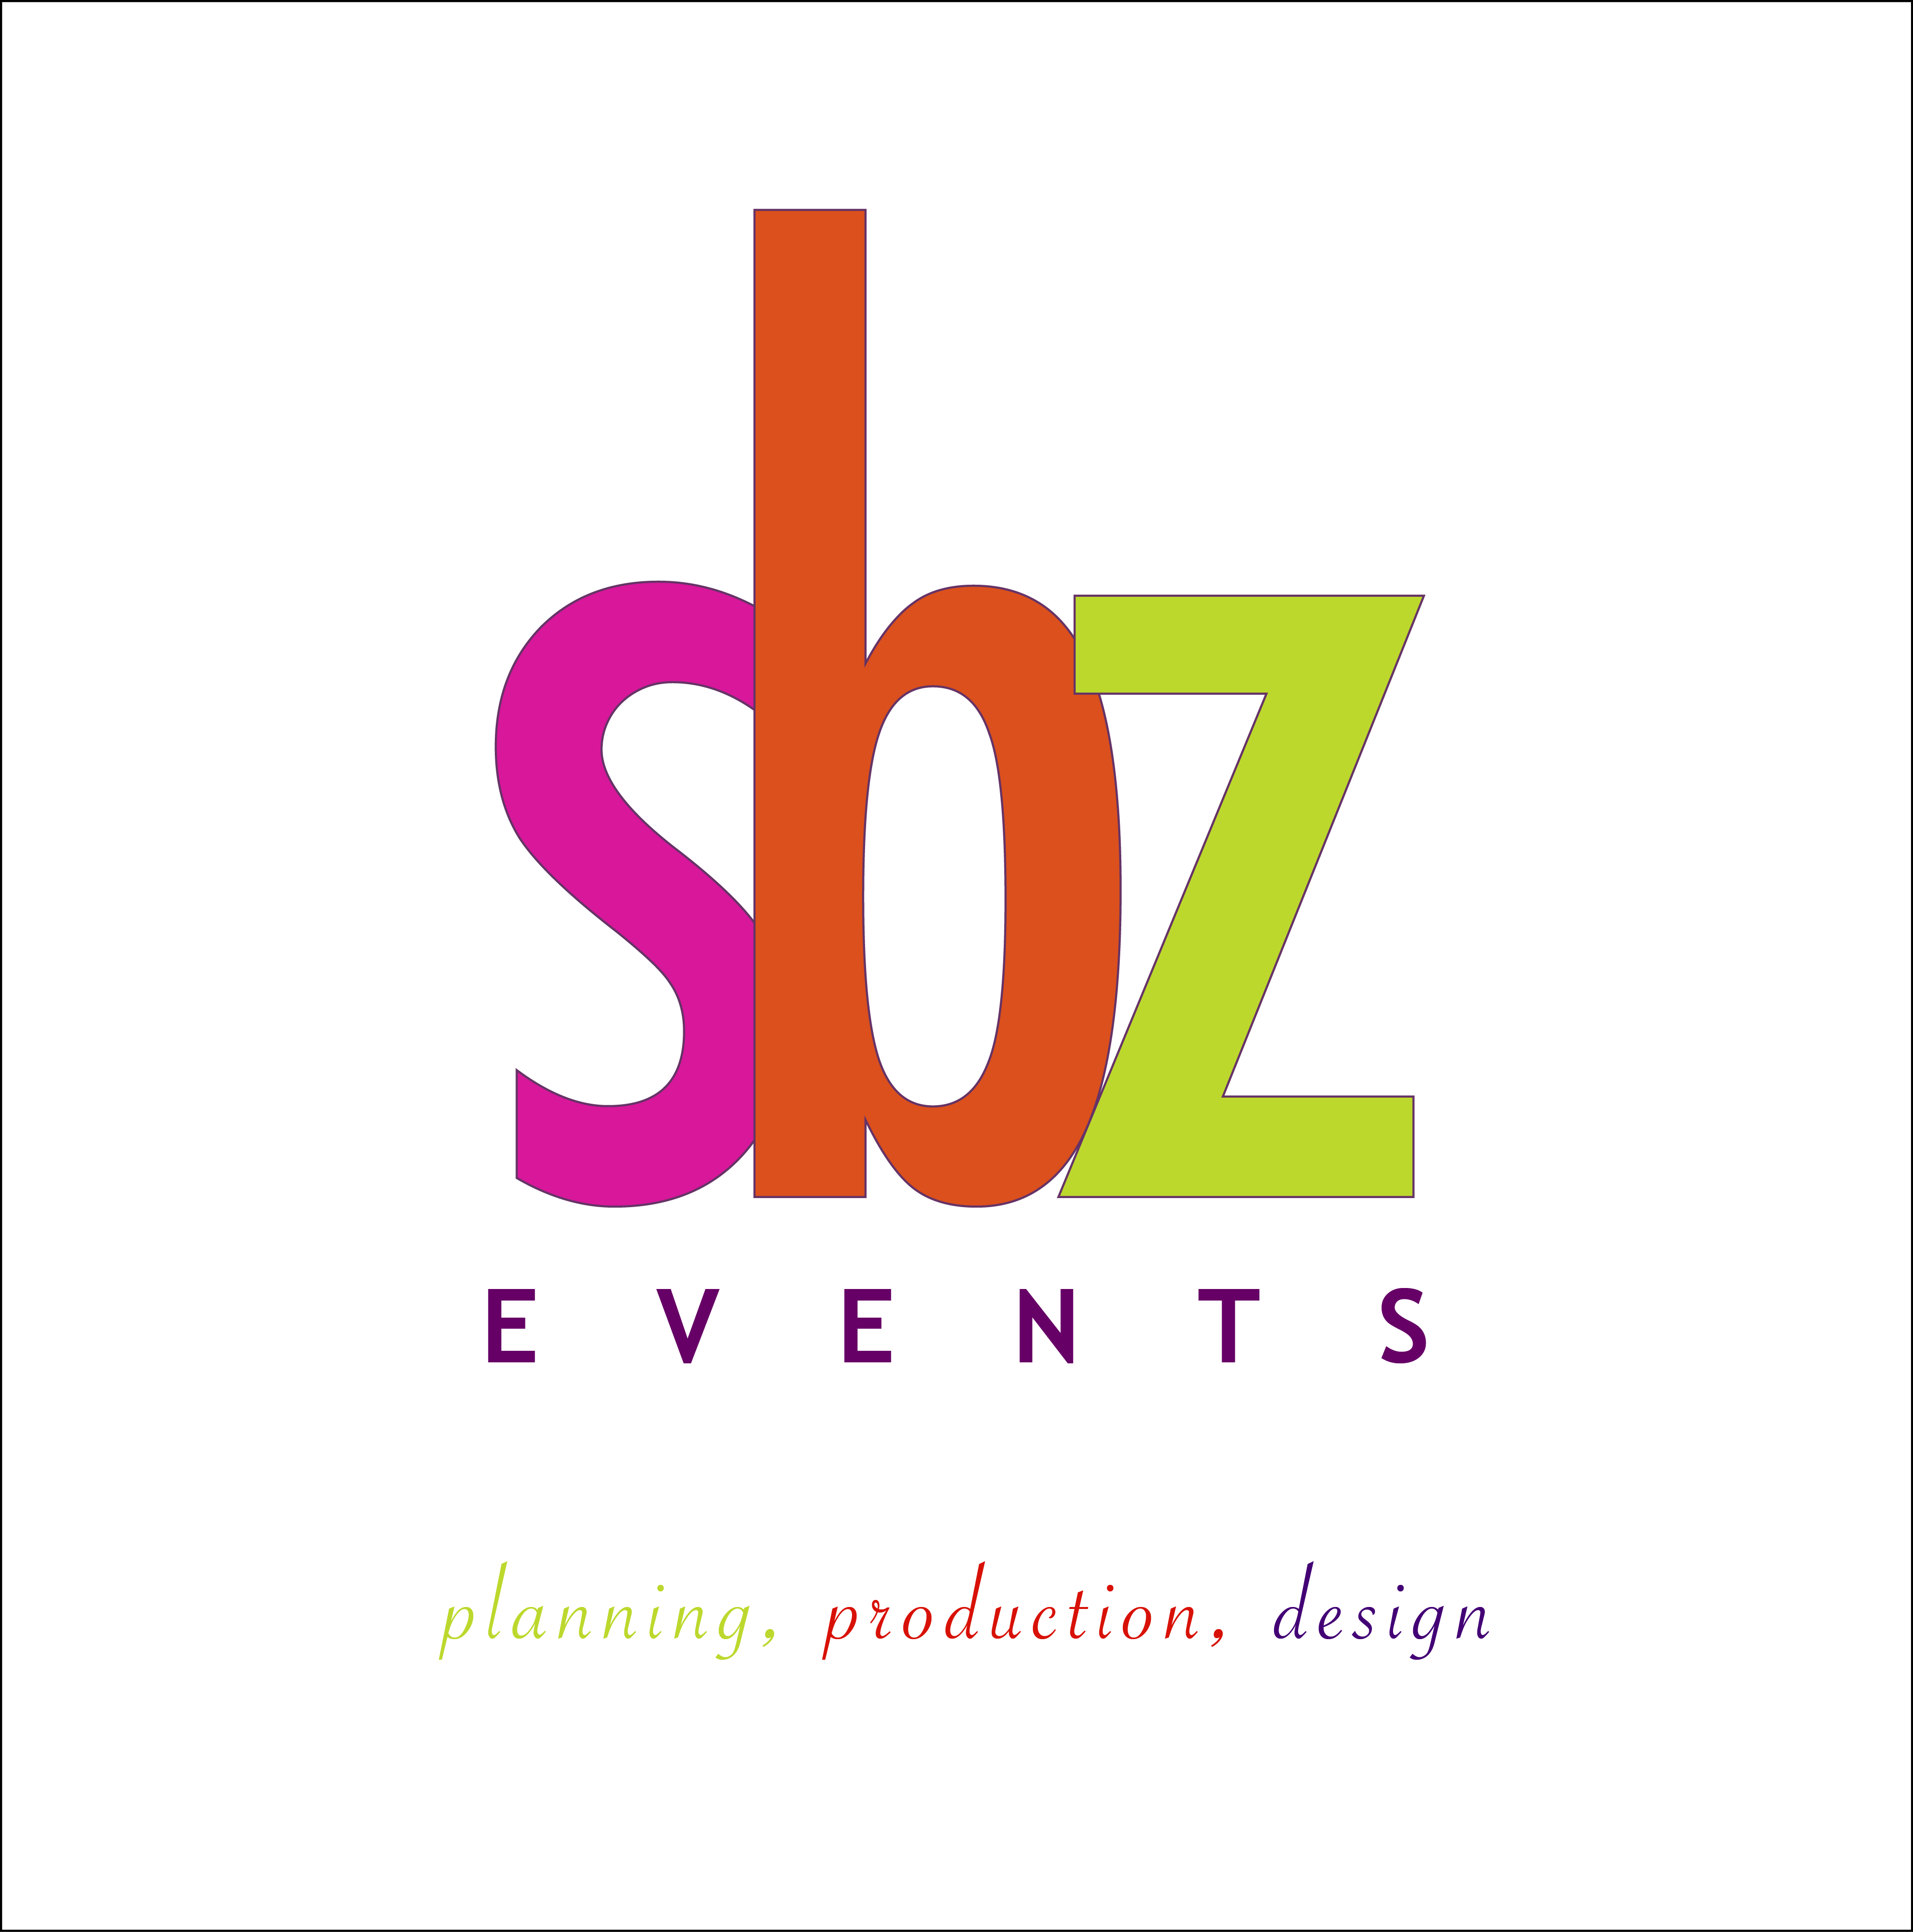 sbz-logo1